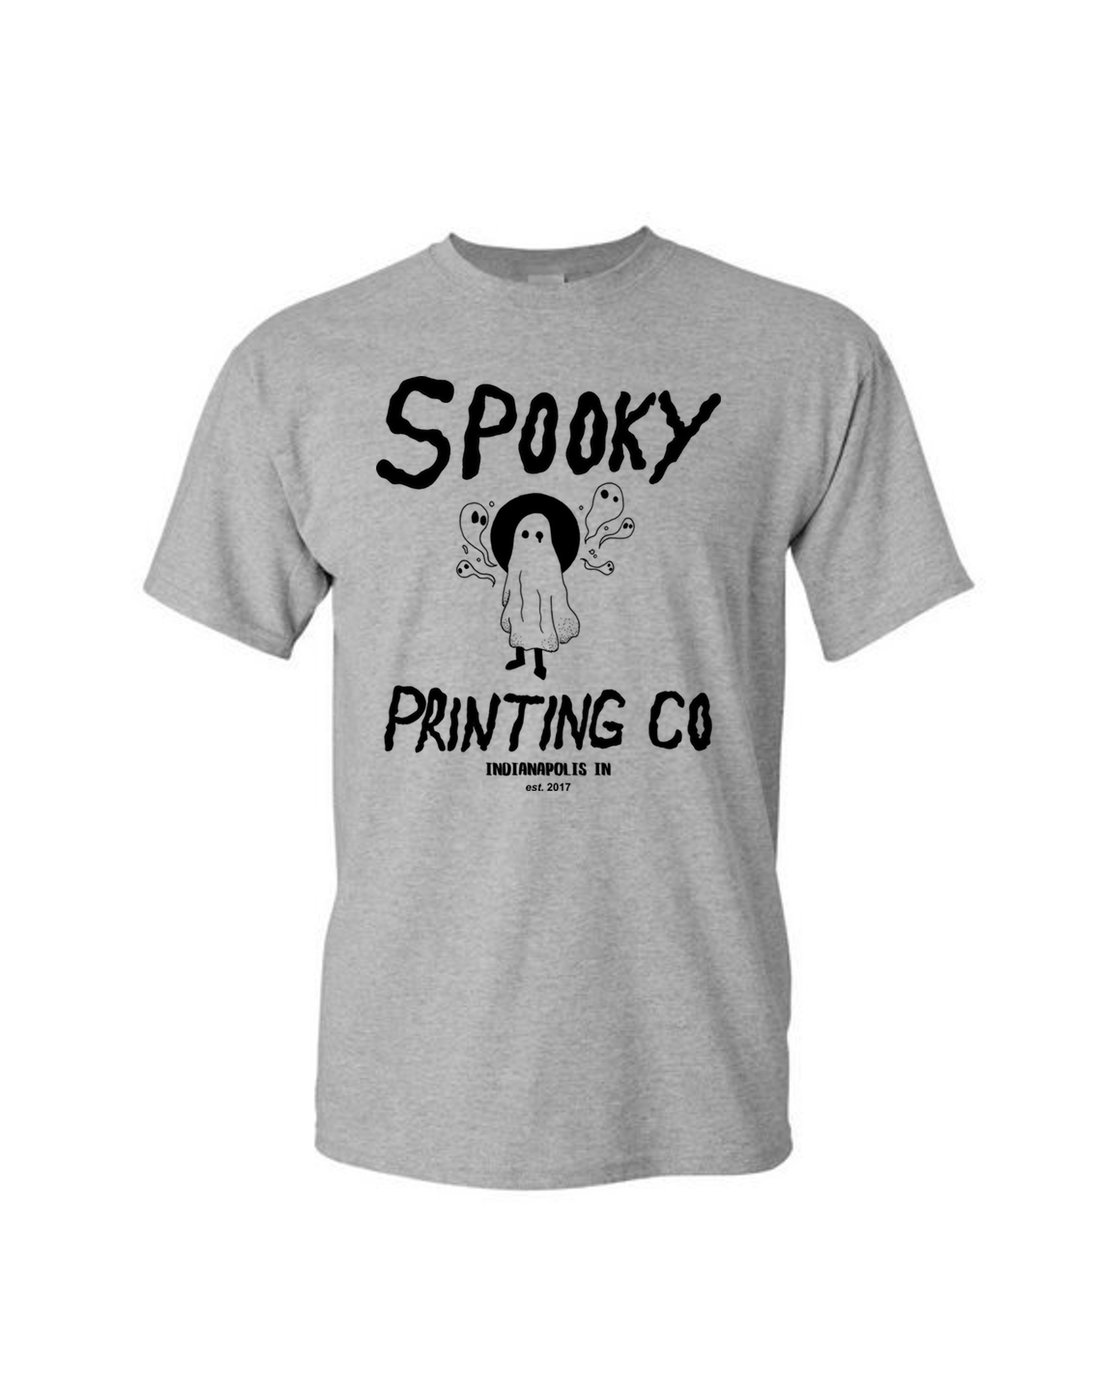 Image of Spooky Print Team Tee (grey)